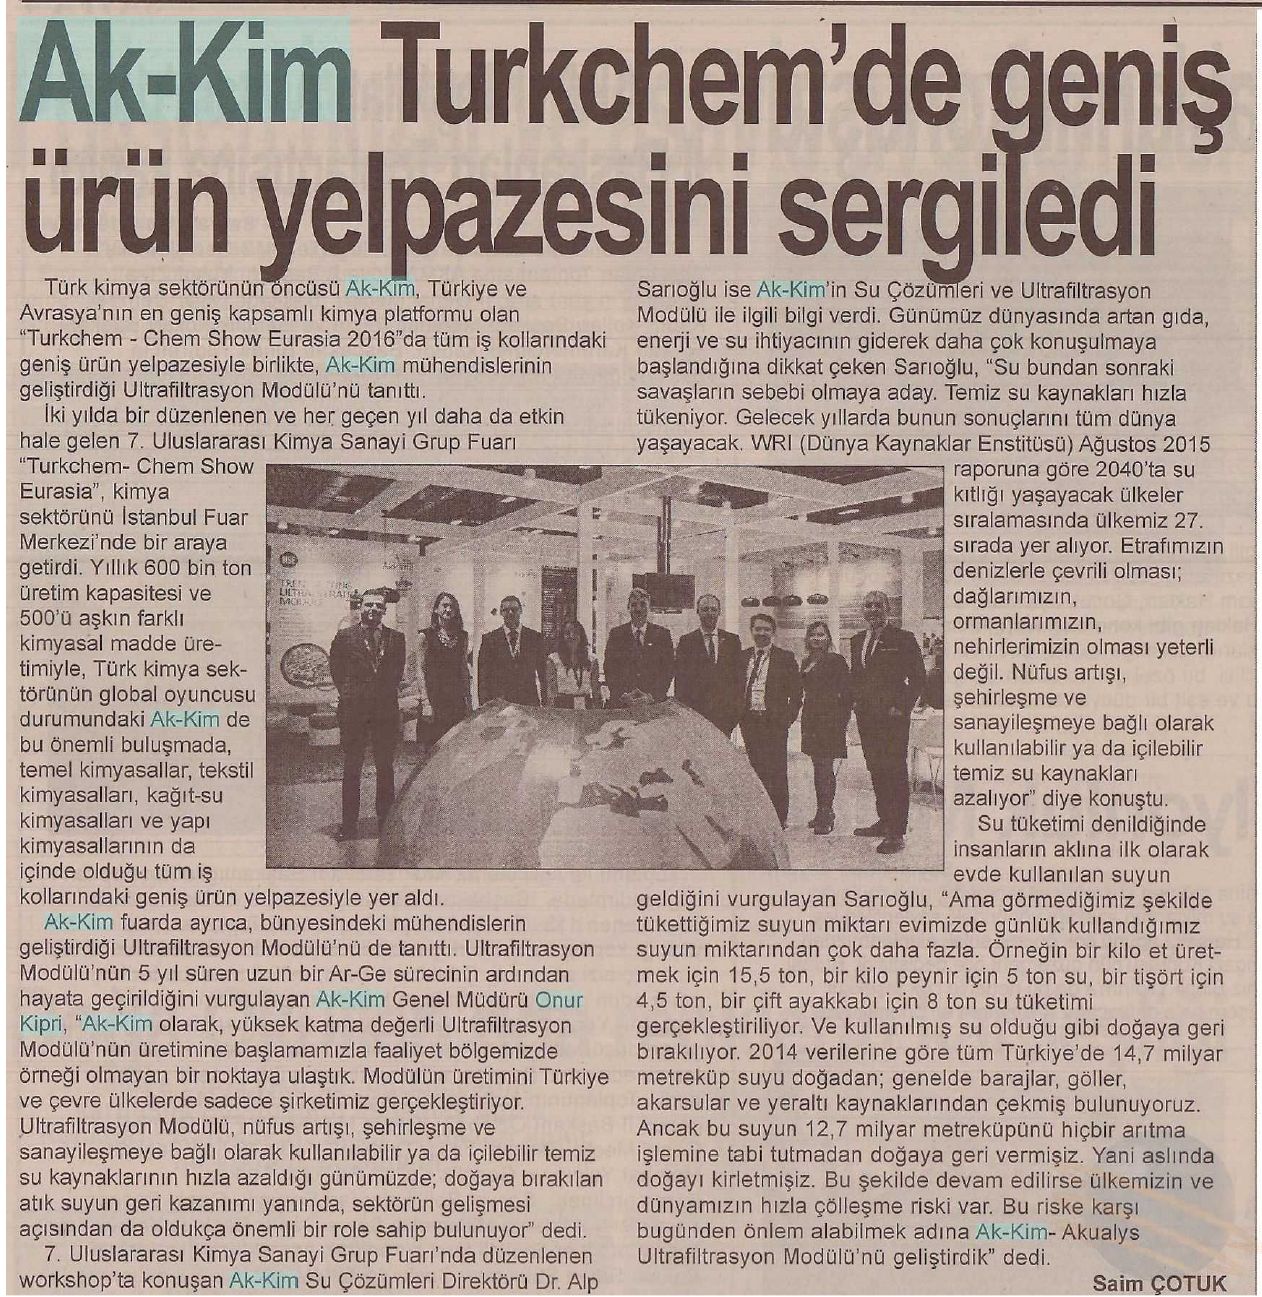 Akkim Turkchem’de geniş ürün yelpazesini sergiledi / Yalova – 21 Kasım 2016